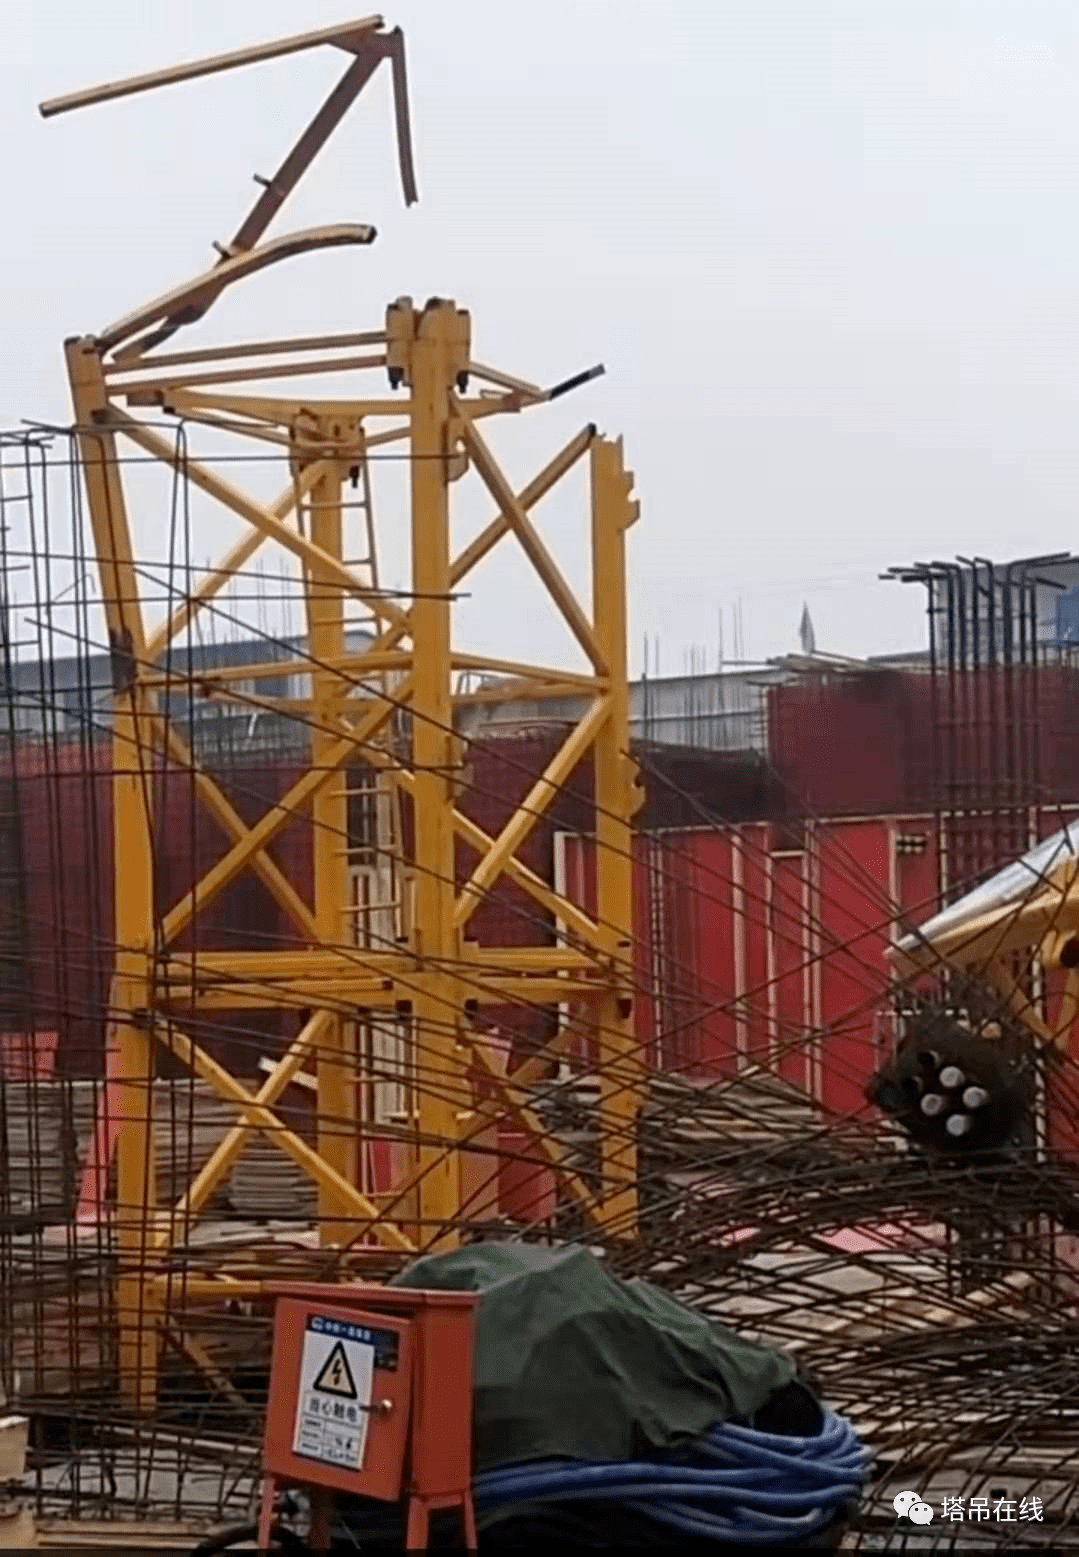 事故快报 | 12月14日山东济宁一在建工地塔吊发生倒塌